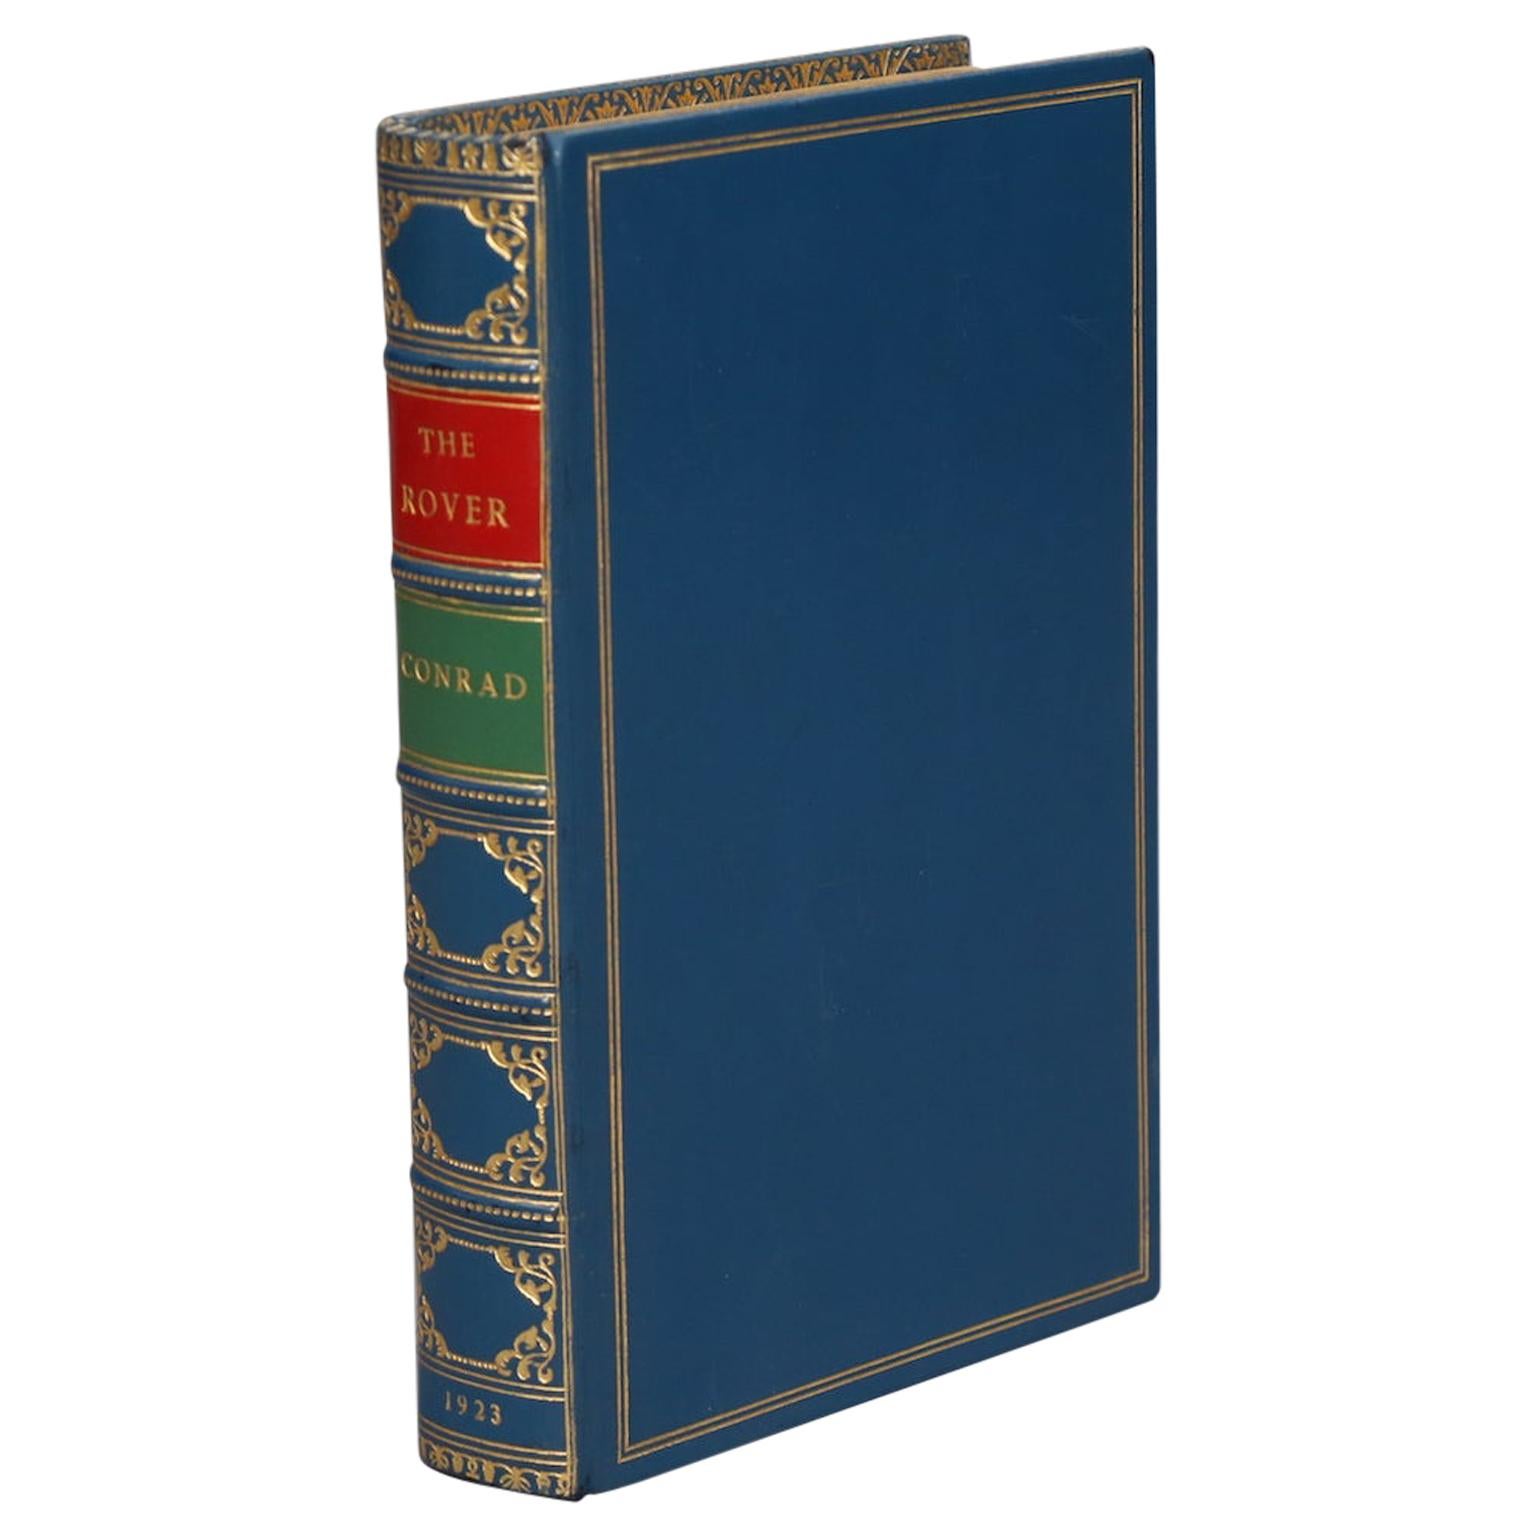 Books, Joseph Conrad's "The Rover" First Edition